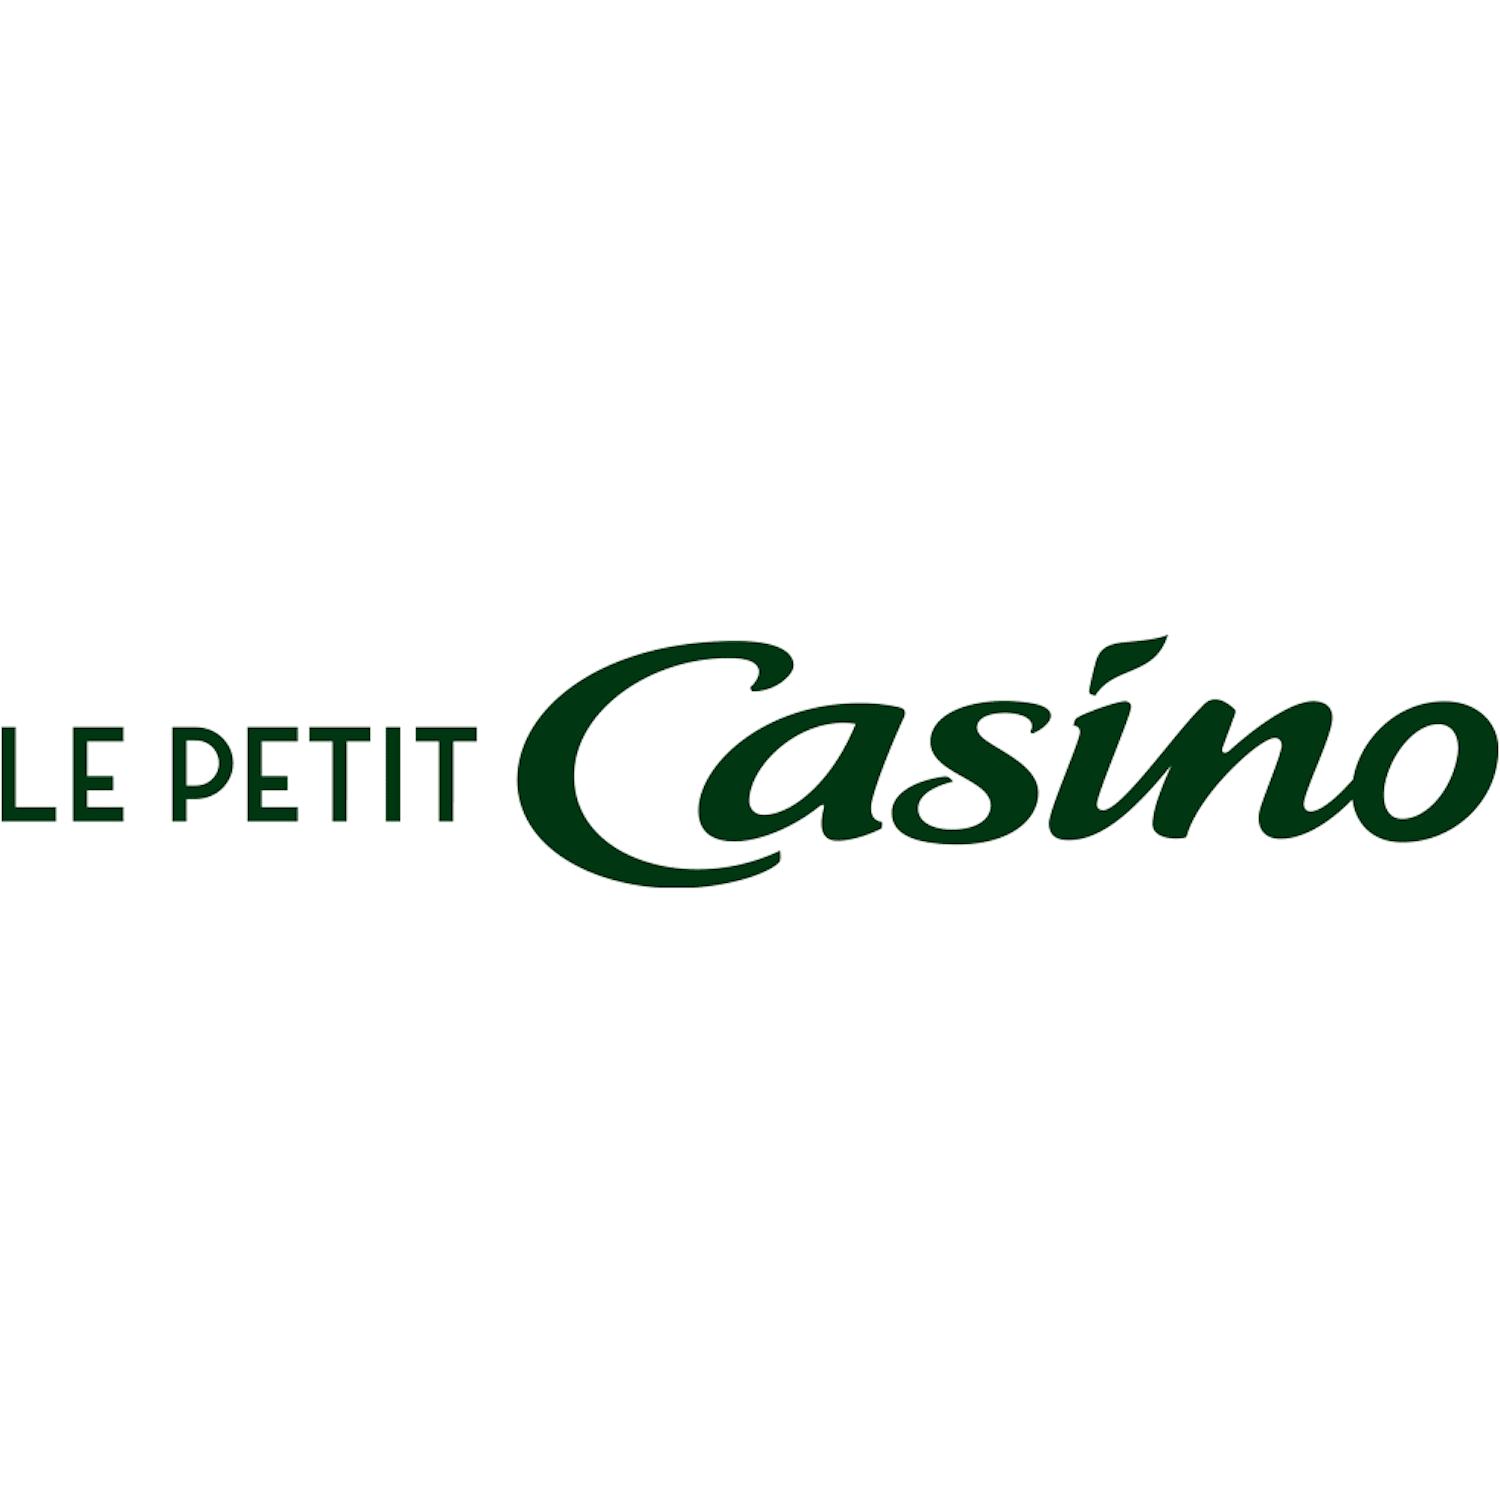 Le Petit Casino Menton